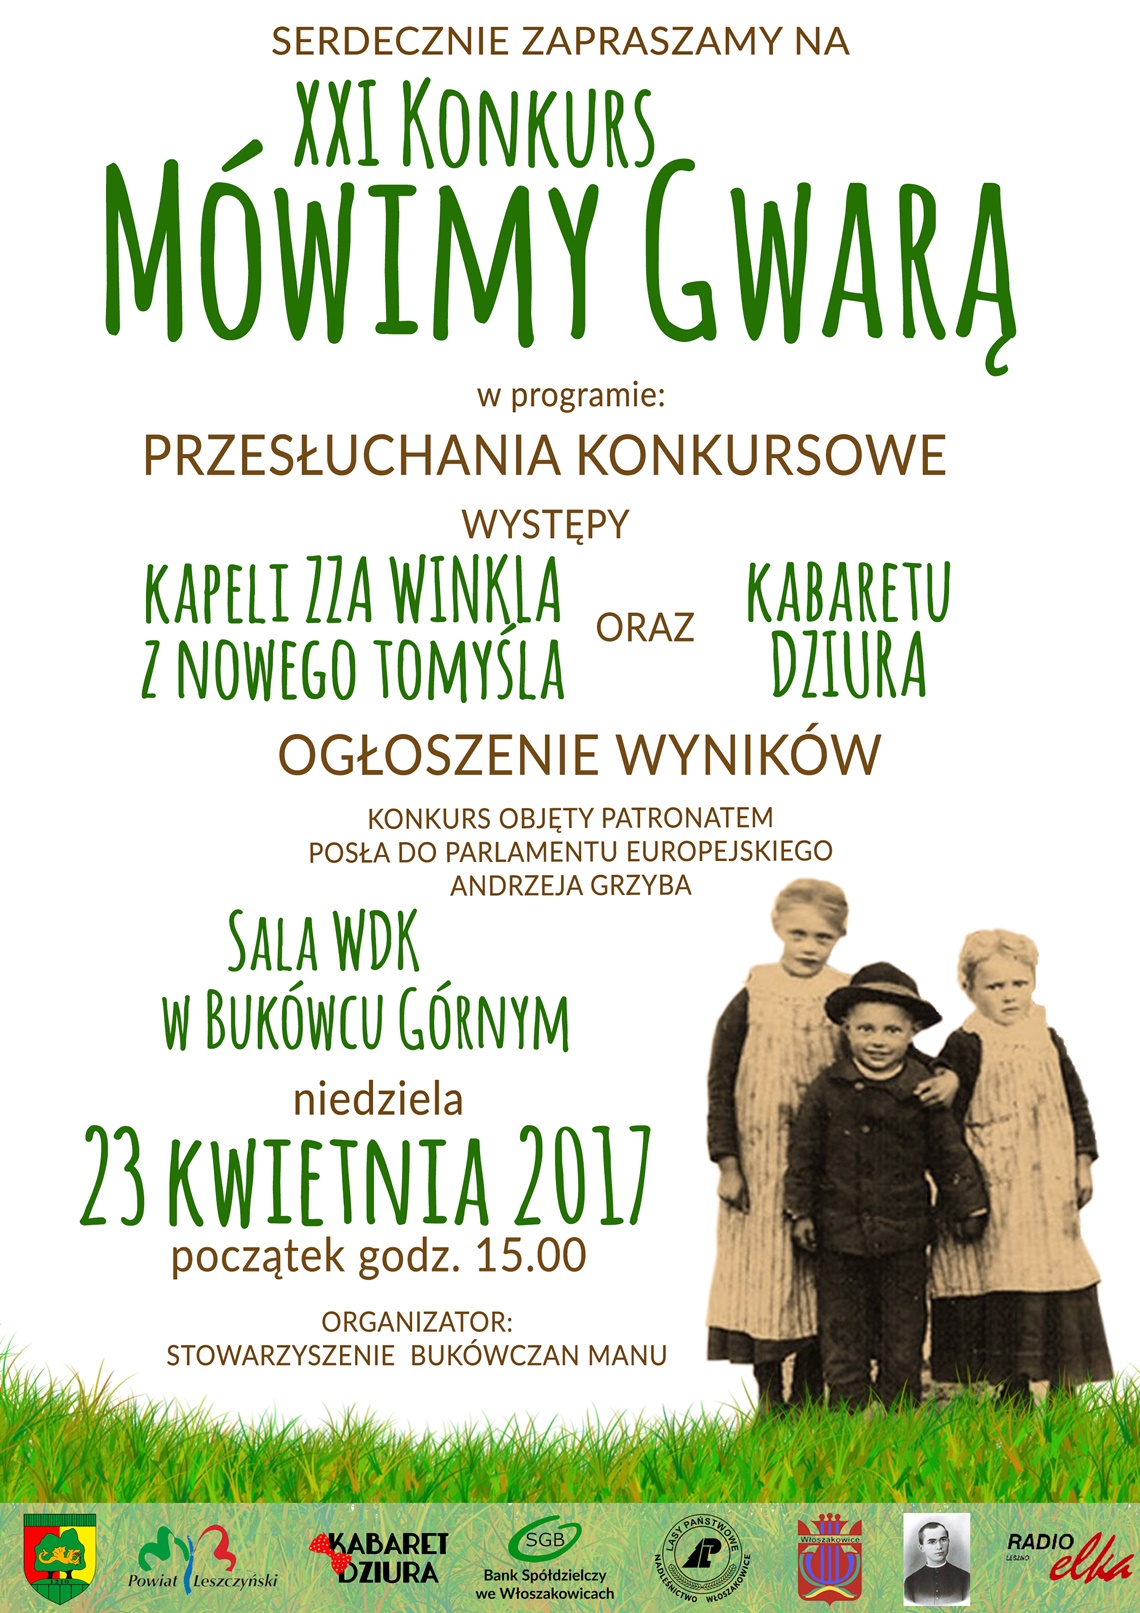 XXI KONKUR MÓWIMY GWARĄ 2017 - zaproszenie